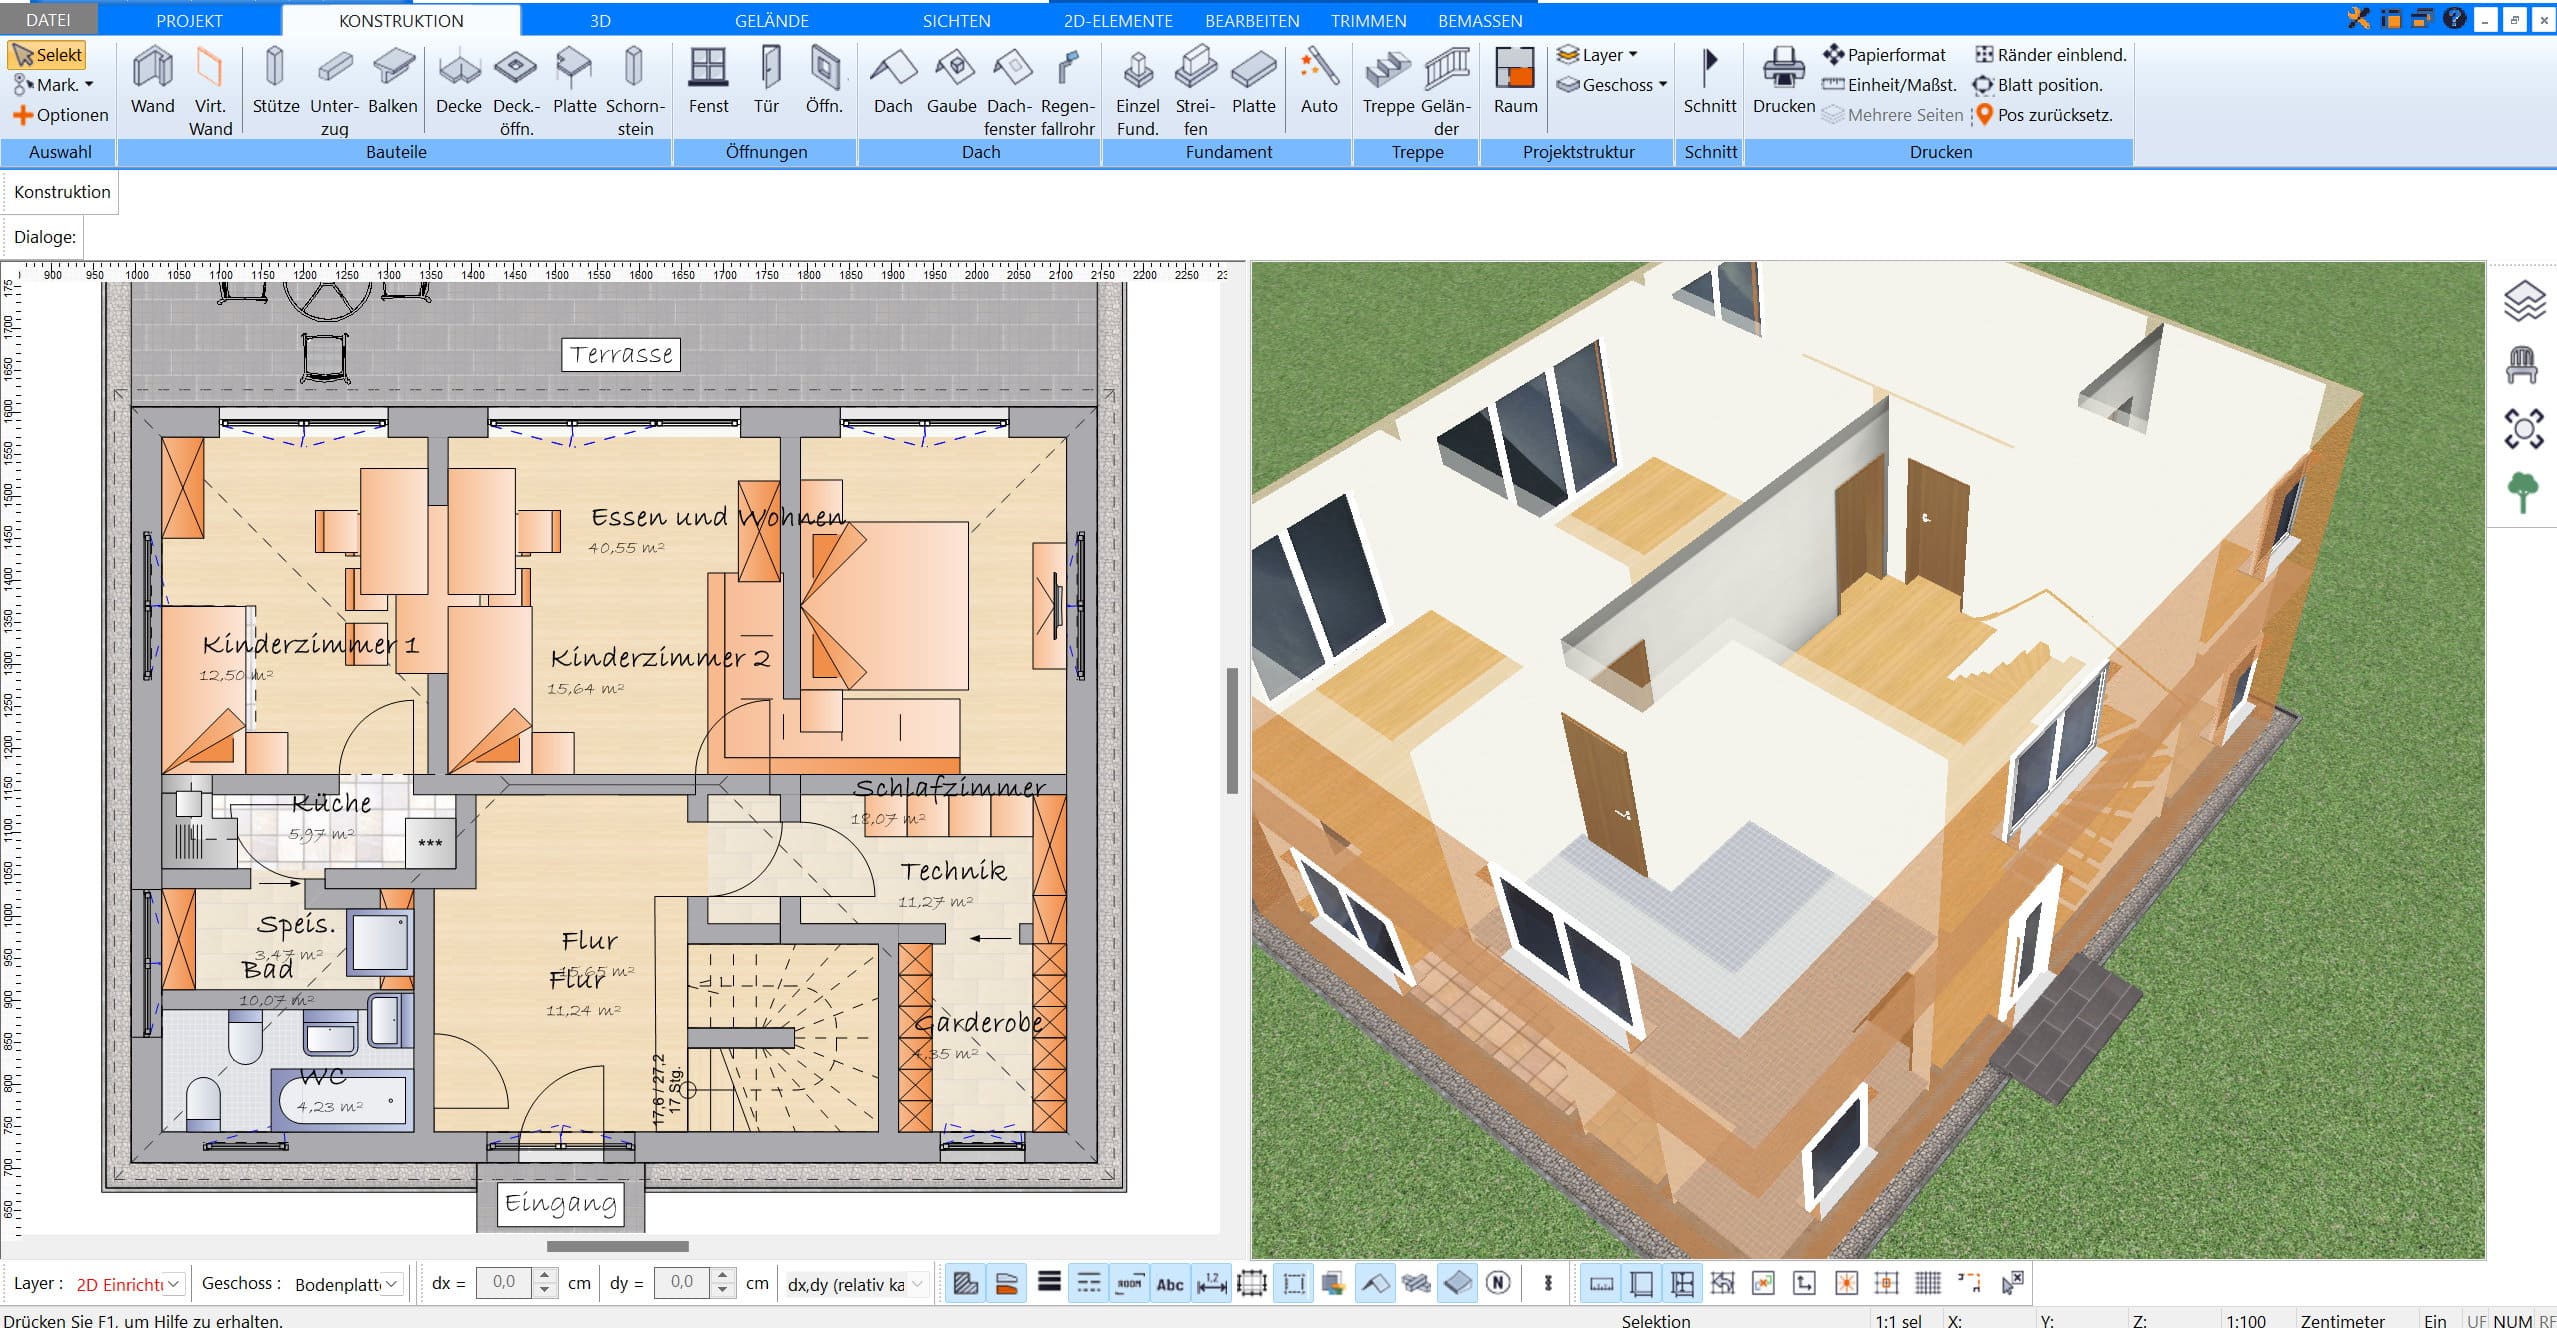 Im Plan7Architekt lässt sich das Haus inklusive Inventar nach deutschen Baustandards virtuell planen & umgestalten